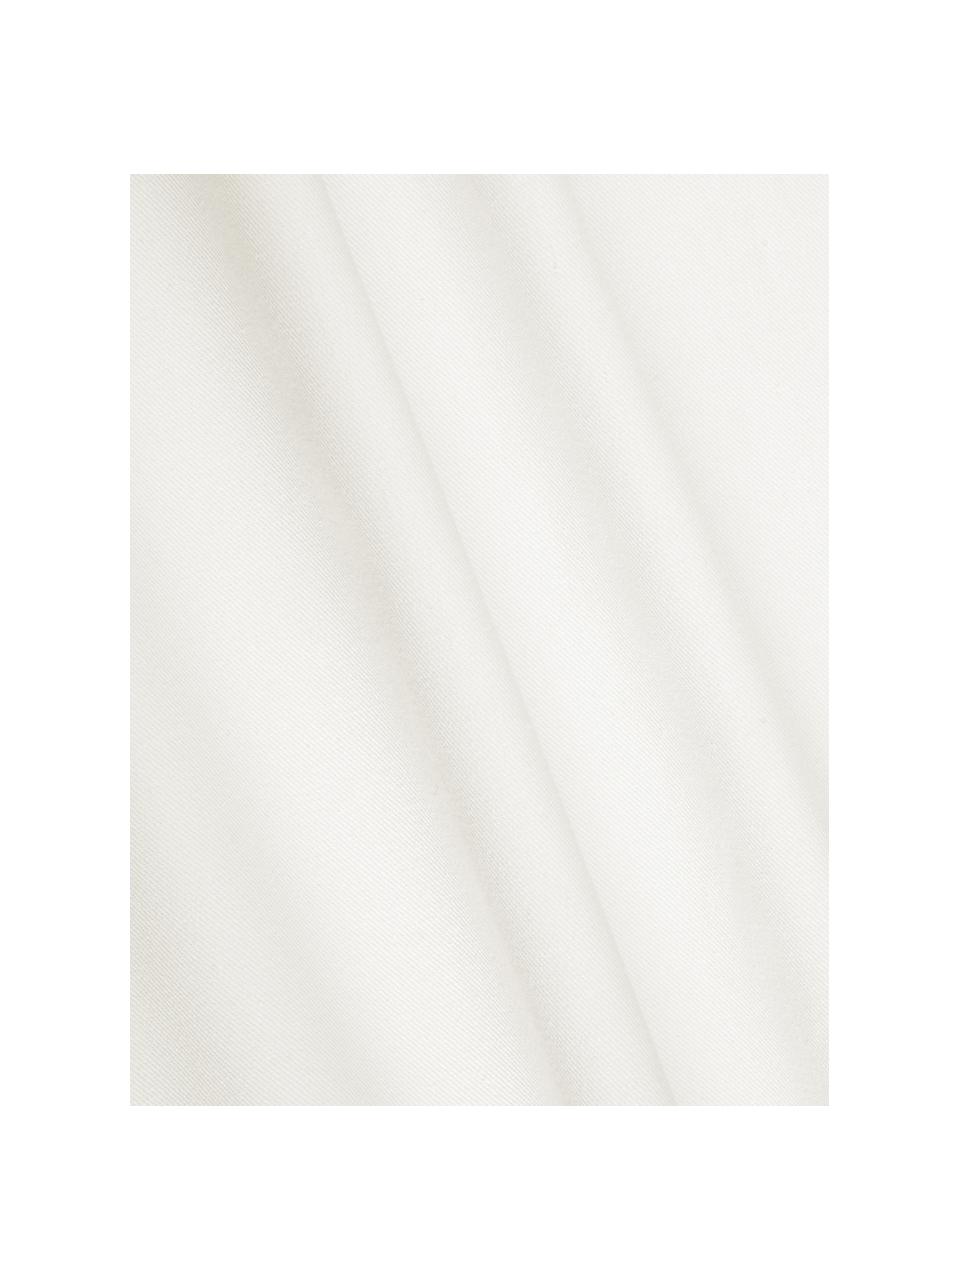 Katoenen kussenhoes Mads in wit, 100% katoen, Wit, 40 x 40 cm